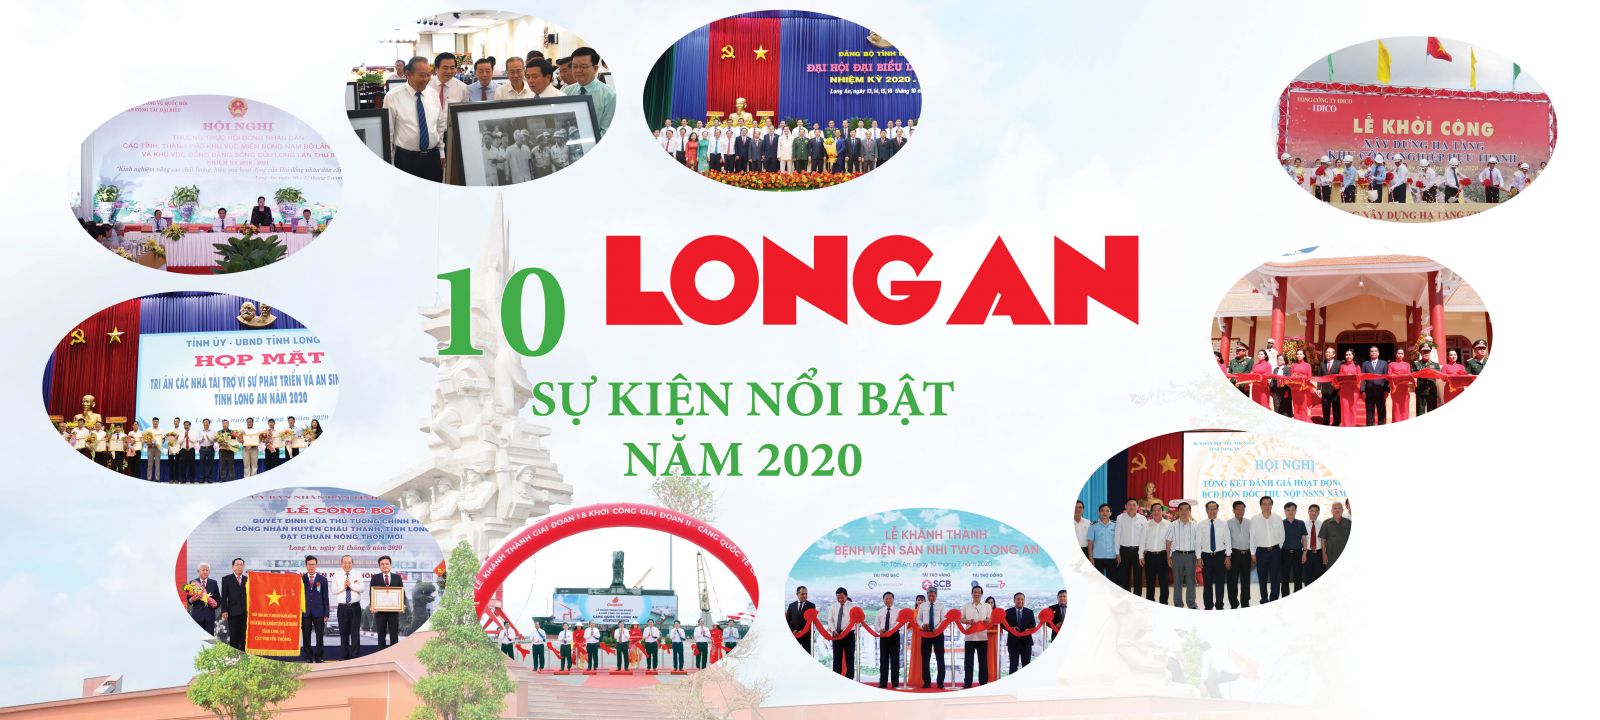 Long An - 10 sự kiện nổi bật năm 2020